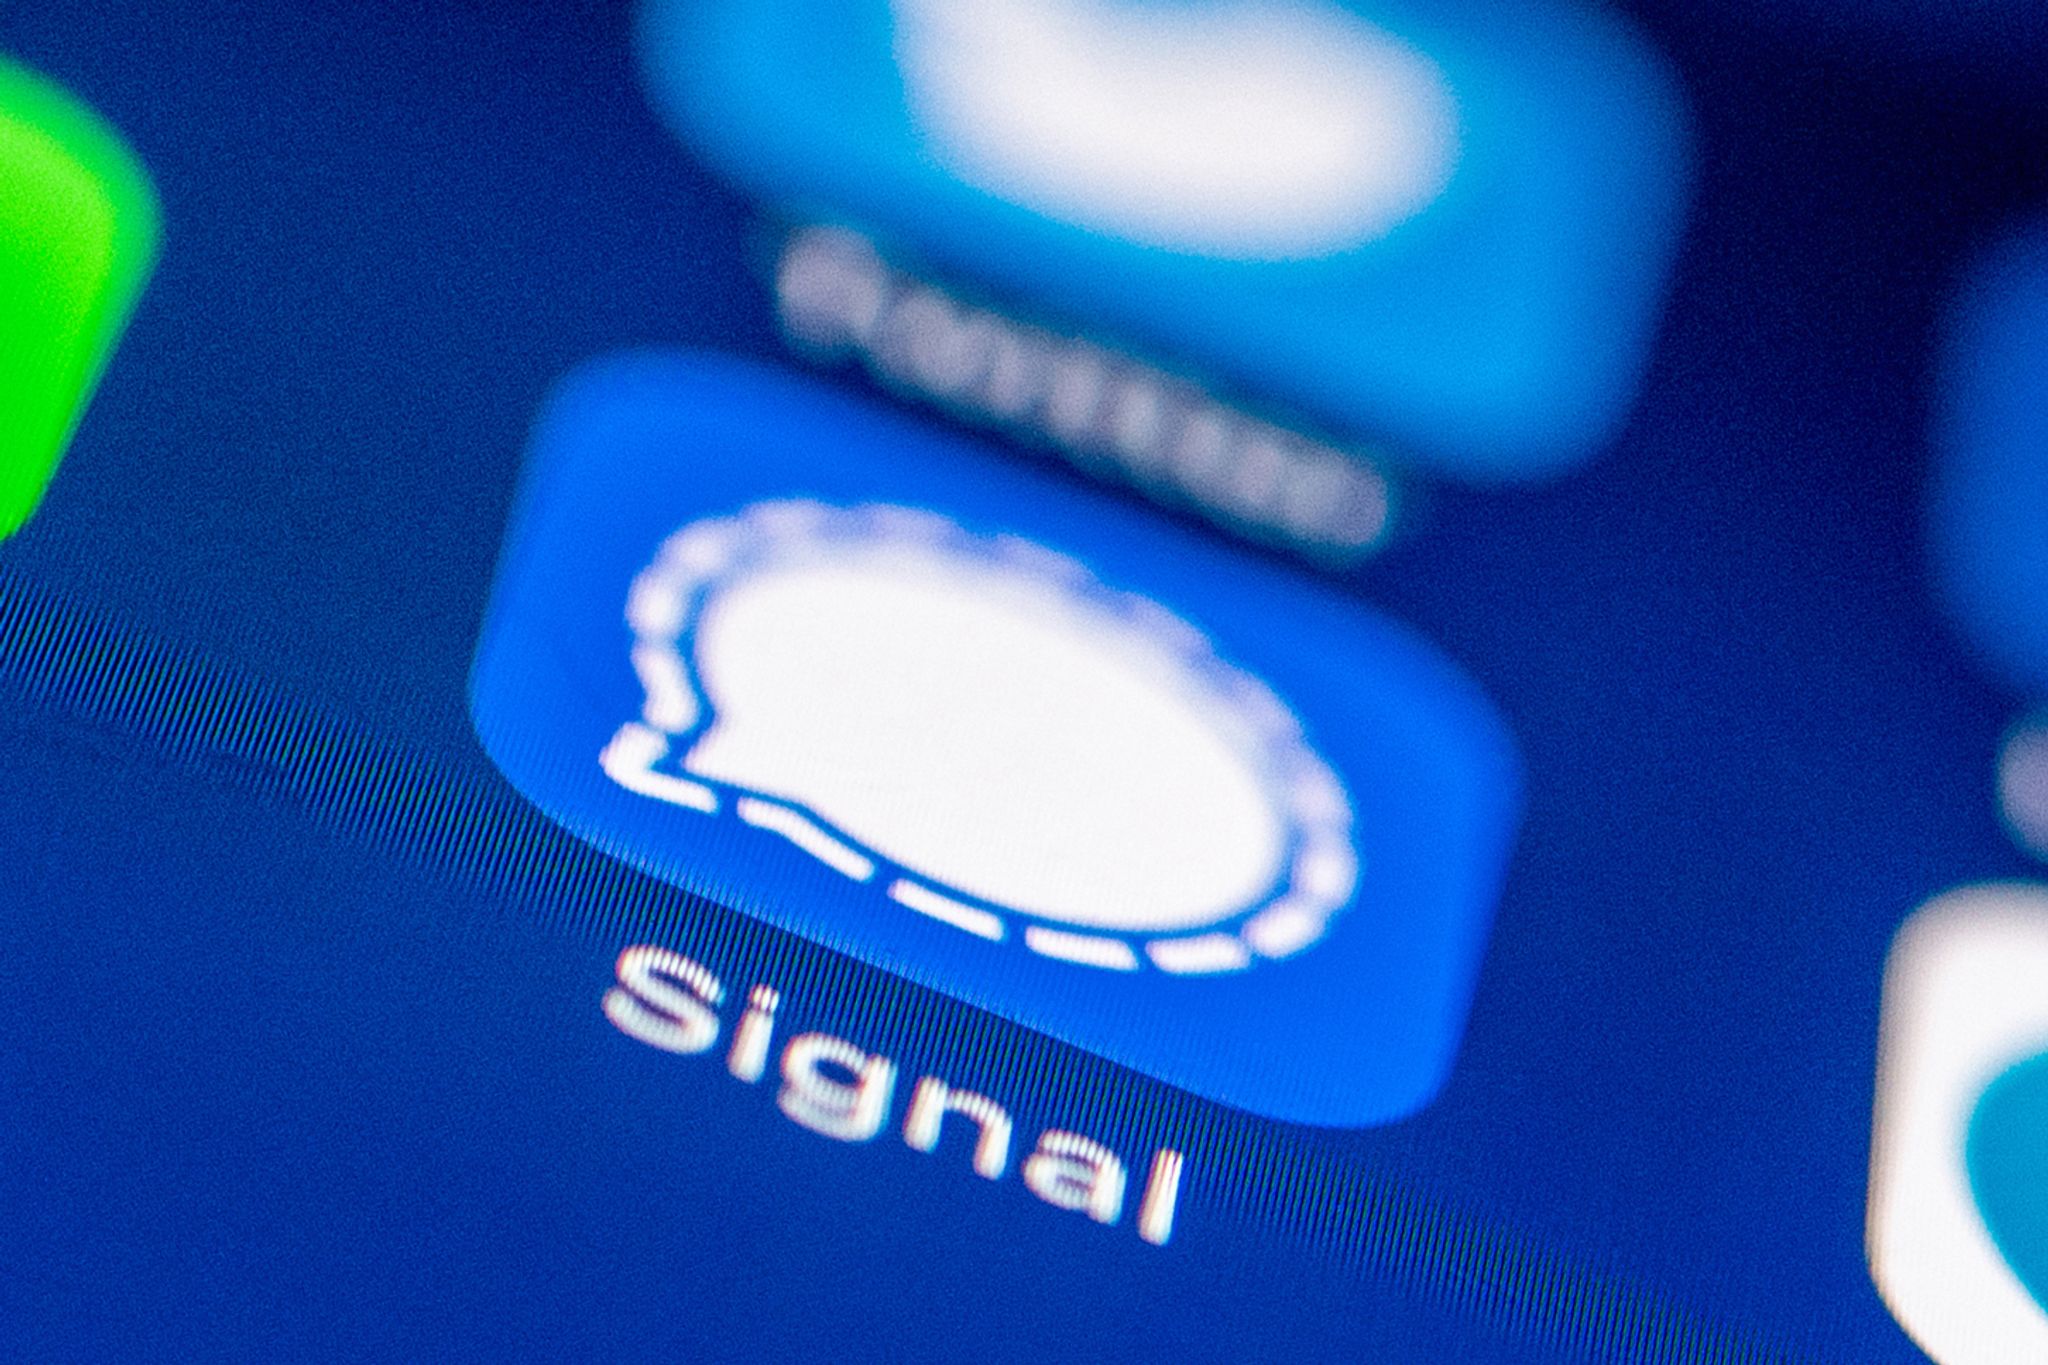 Das Logo des Messenger Dienstes Signal auf einem Smartphone.